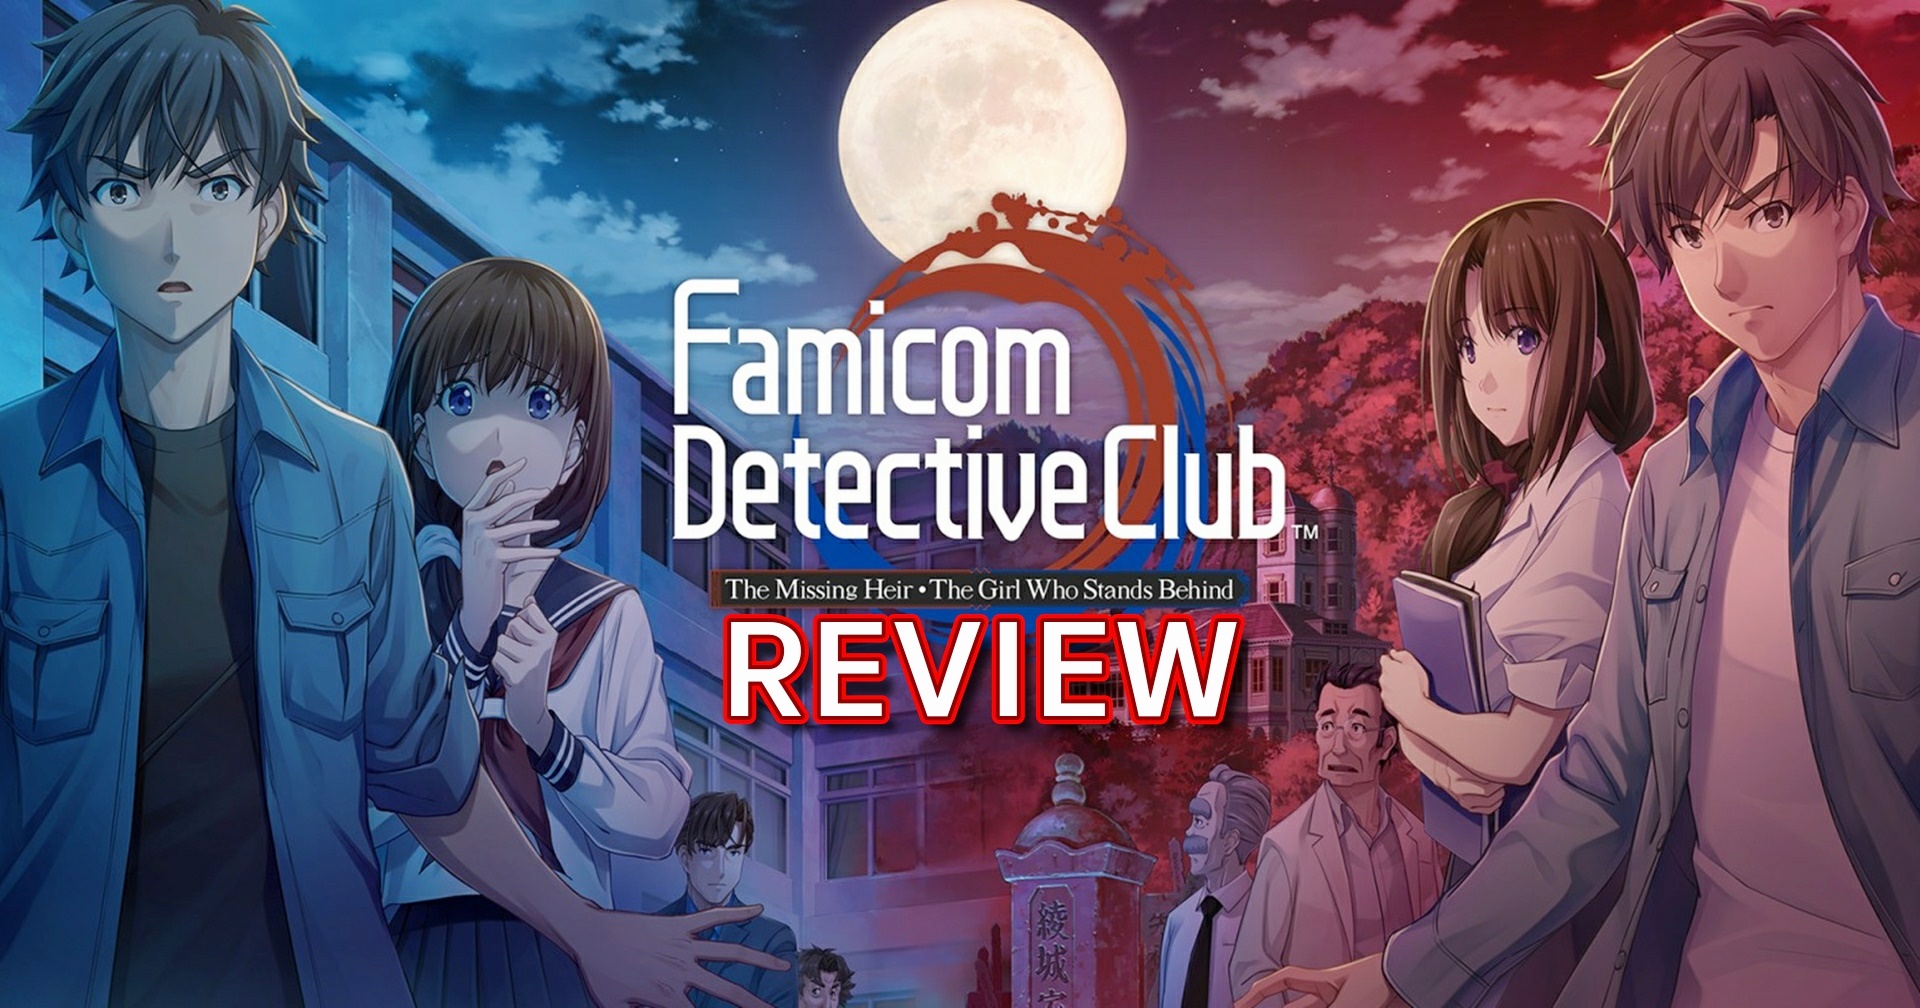 [รีวิวเกม] Famicom Detective Club เกมยอดนักสืบแฟมิคอมฉบับรีเมกบน Switch